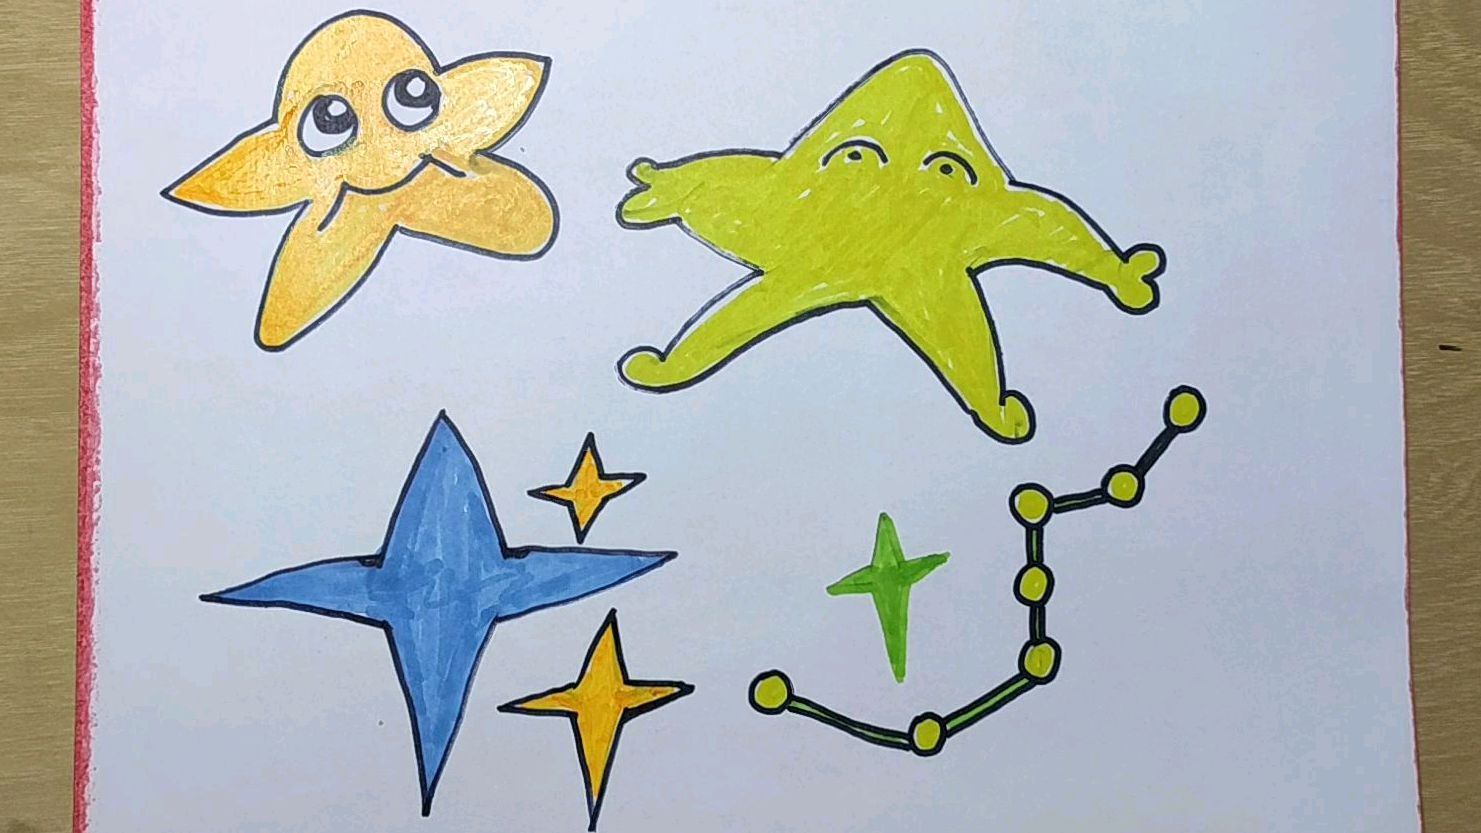 03:56  来源:好看视频-星星是怎么画的儿童画 5星星画法按教学:首先图片